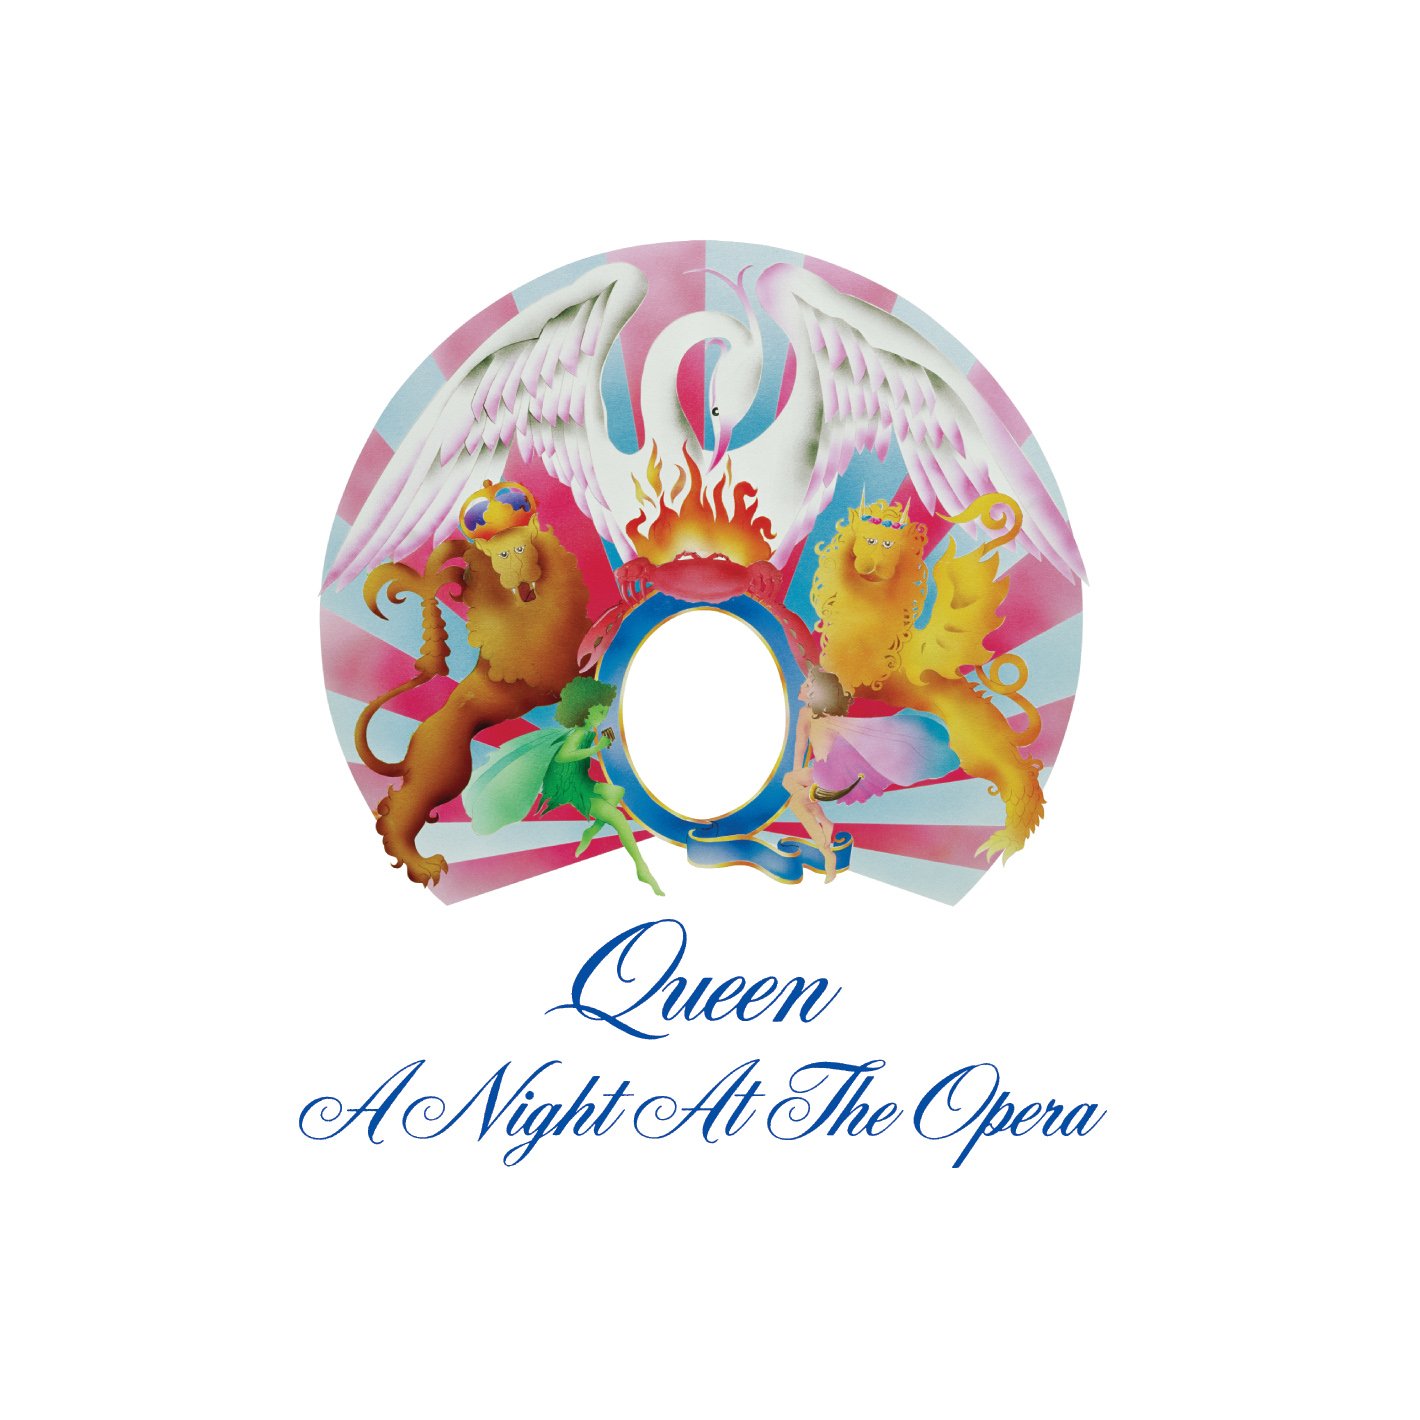 Audio Cd Queen - A Night At The Opera (2 Cd) NUOVO SIGILLATO, EDIZIONE DEL 19/05/2021 SUBITO DISPONIBILE